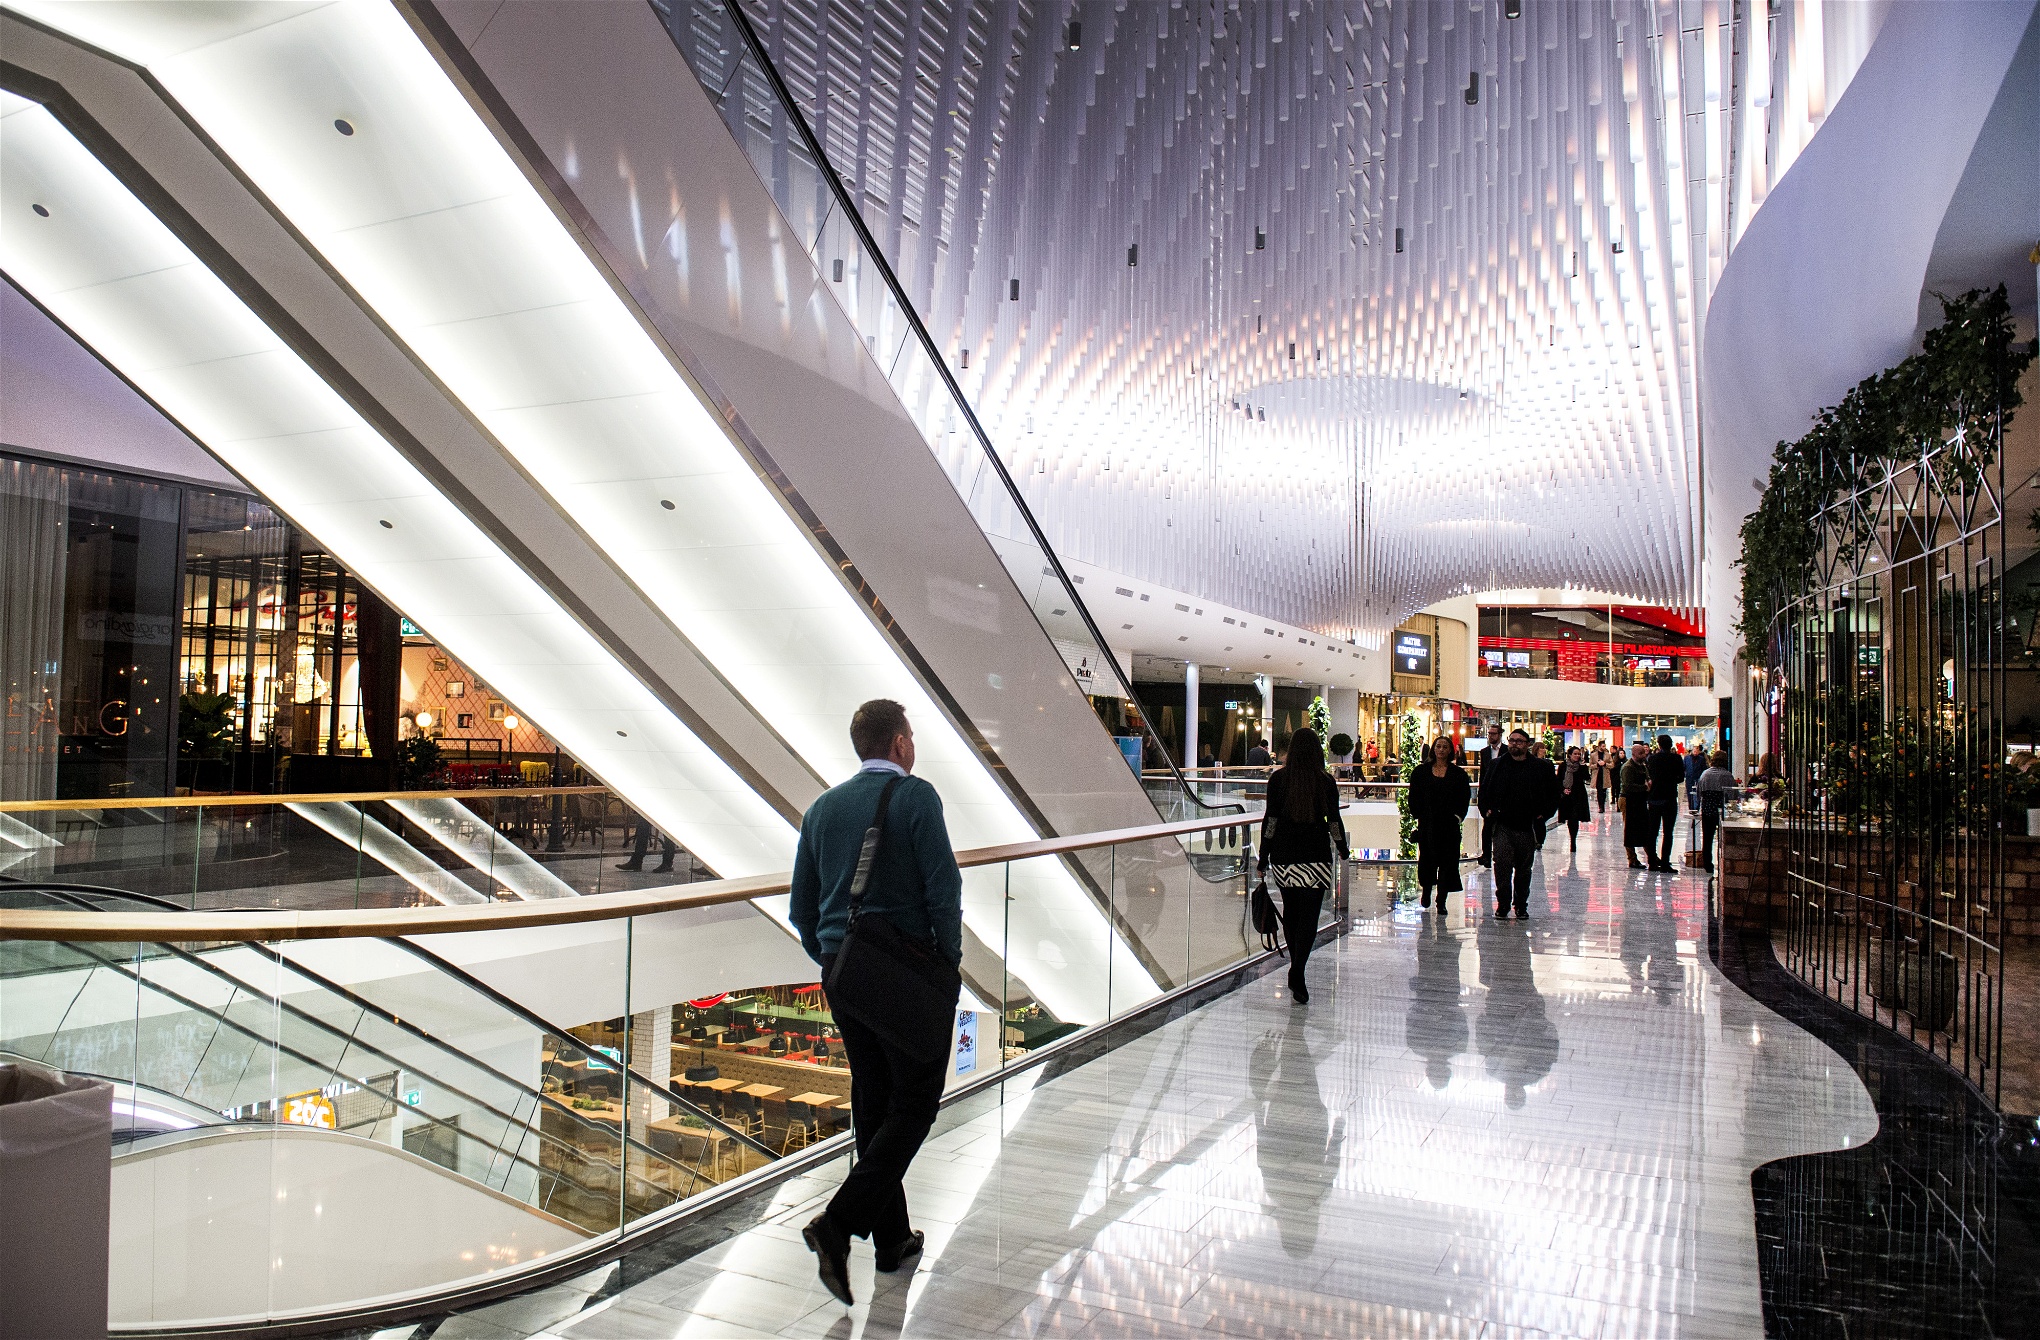 Den genomgripande kommersialiseringen av samhällslivet har urholkat befolkningens politiska engagemang, menar Wolfgang Streeck. På bilden Mall of Scandinavia i Solna, Skandinaviens största galleria, invigd 2015.